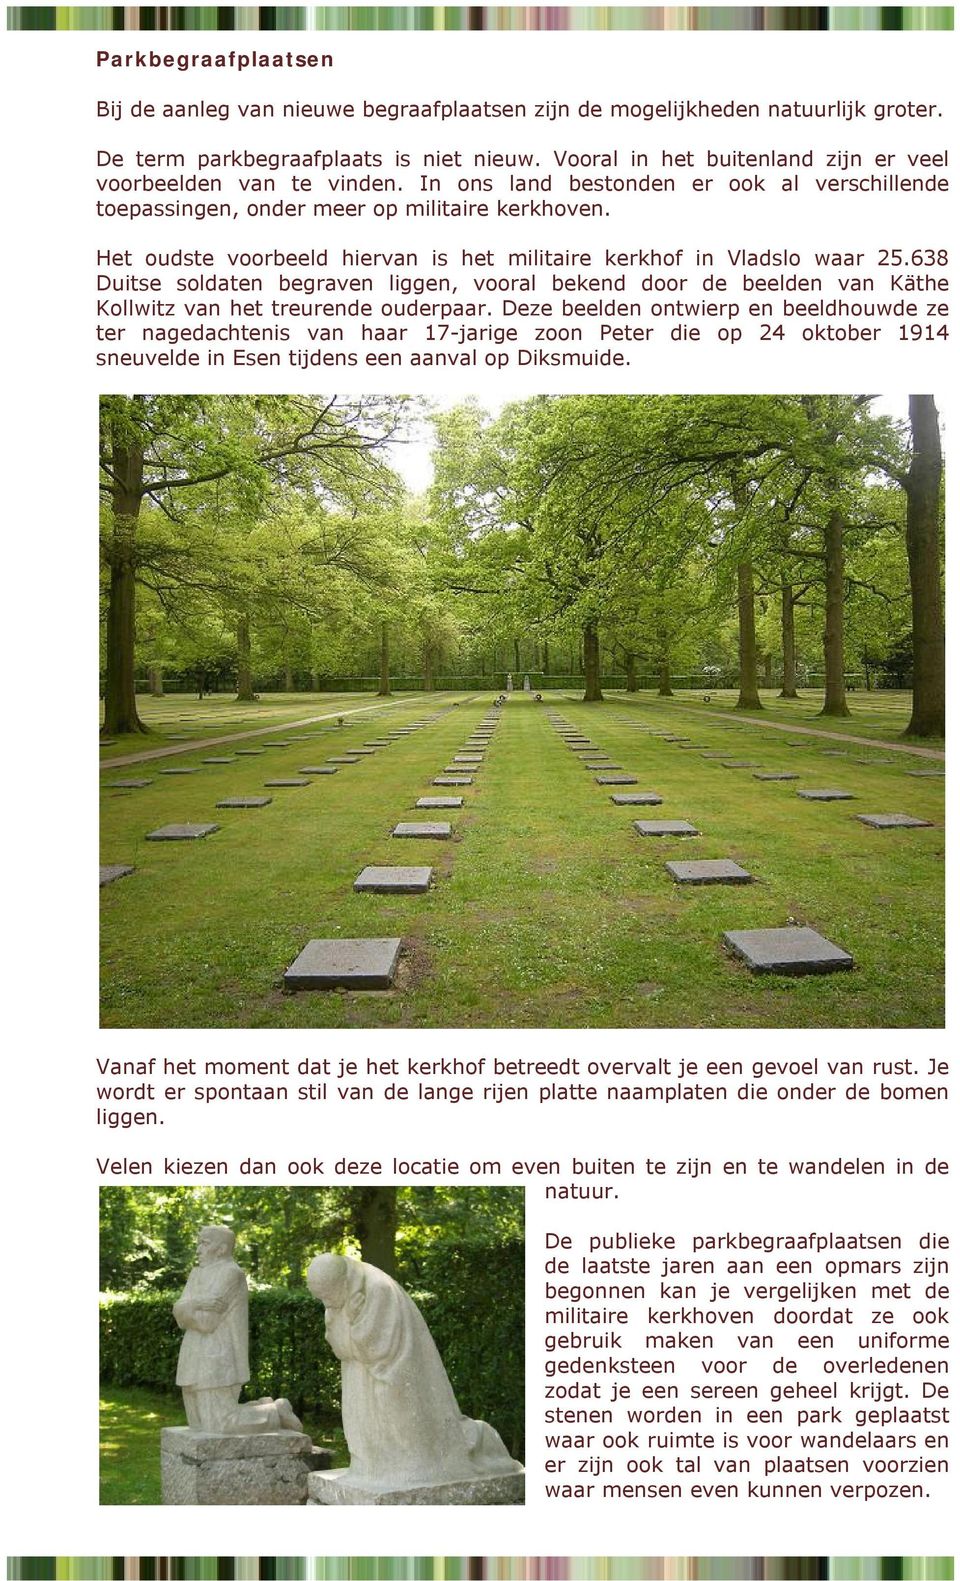 Het oudste voorbeeld hiervan is het militaire kerkhof in Vladslo waar 25.638 Duitse soldaten begraven liggen, vooral bekend door de beelden van Käthe Kollwitz van het treurende ouderpaar.